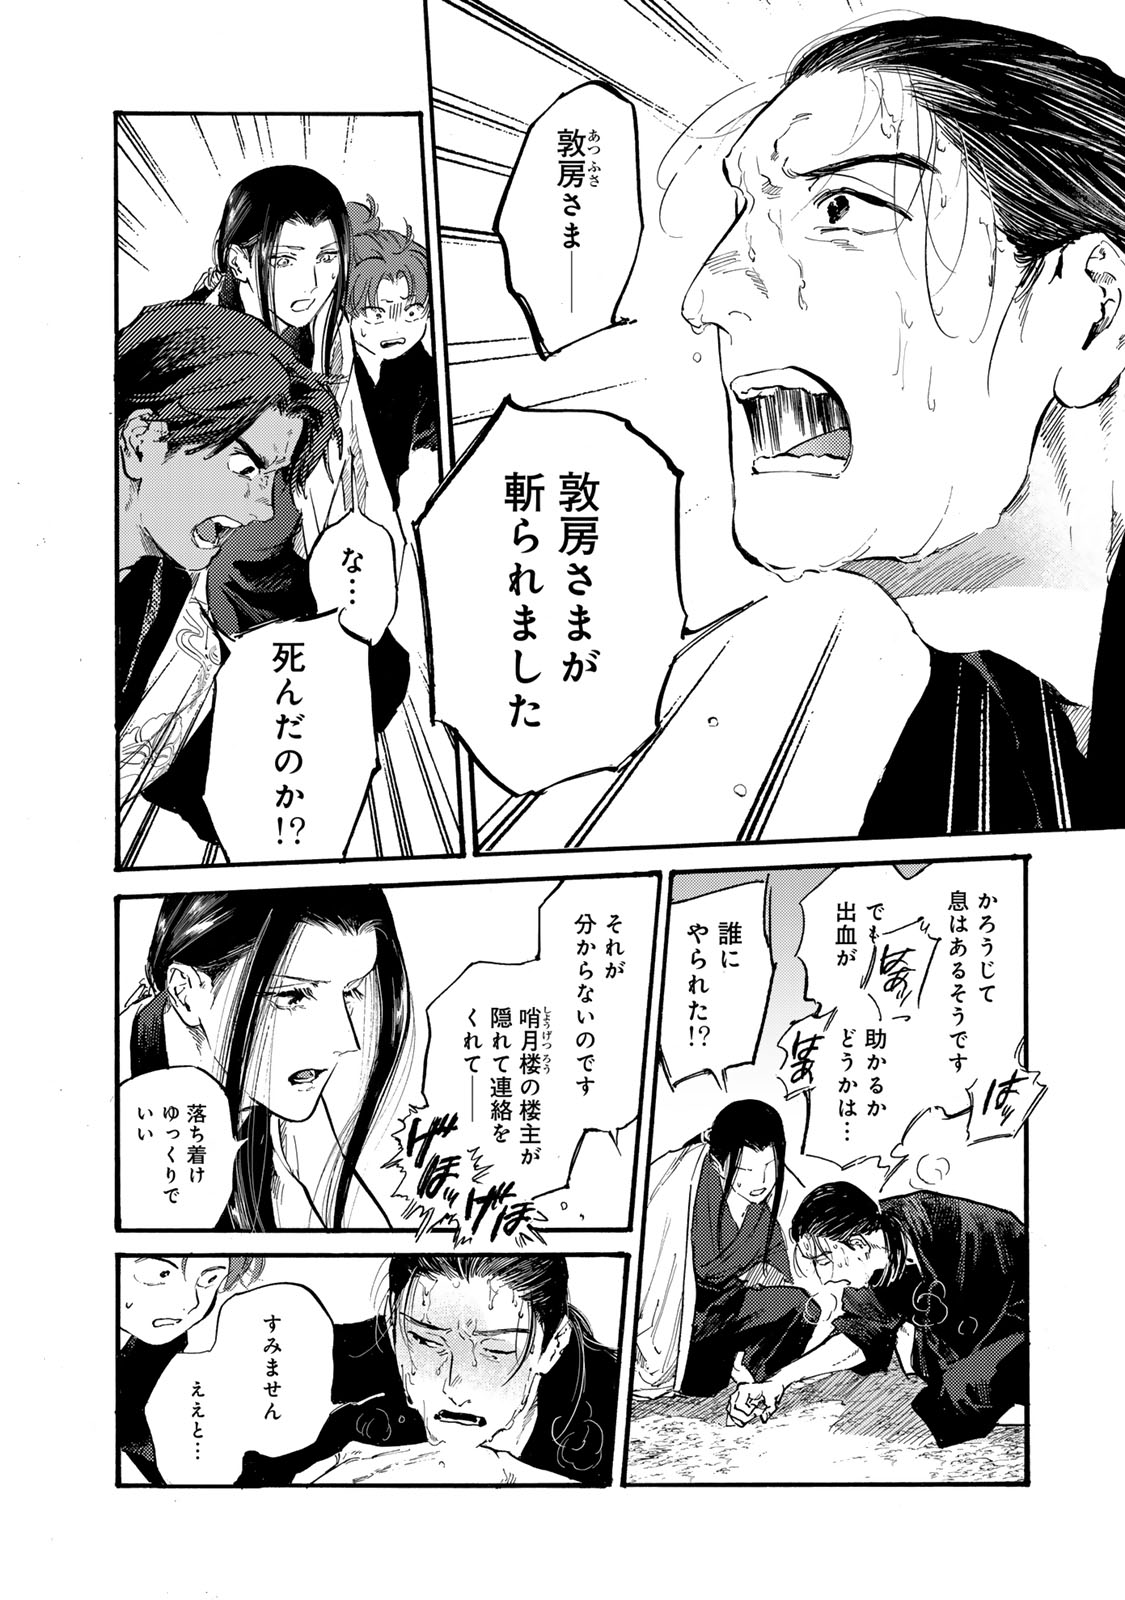 Karasu wa Aruji wo Erabanai - Chapter 39 - Page 16